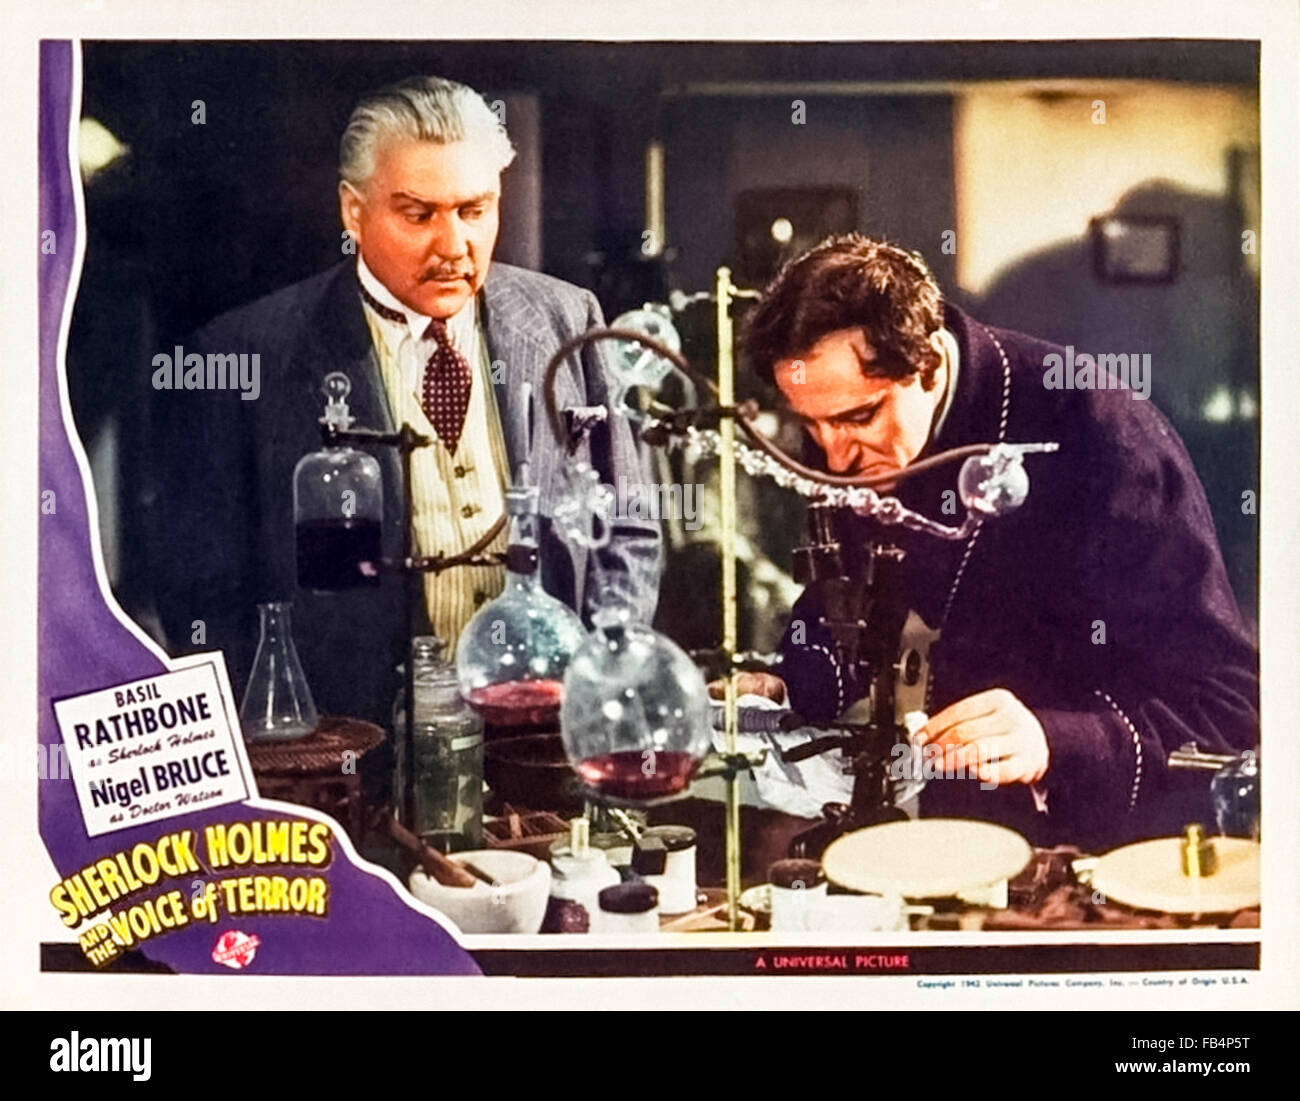 Carte Hall pour Sherlock Holmes et la voix de la terreur' 1942 avec Sherlock Holmes dans son laboratoire. Réalisé par Roy William Neill et avec Basil Rathbone (Holmes) ; Nigel Bruce (Watson) et Evelyn Ankers (Kitty). Voir la description pour plus d'informations. Banque D'Images